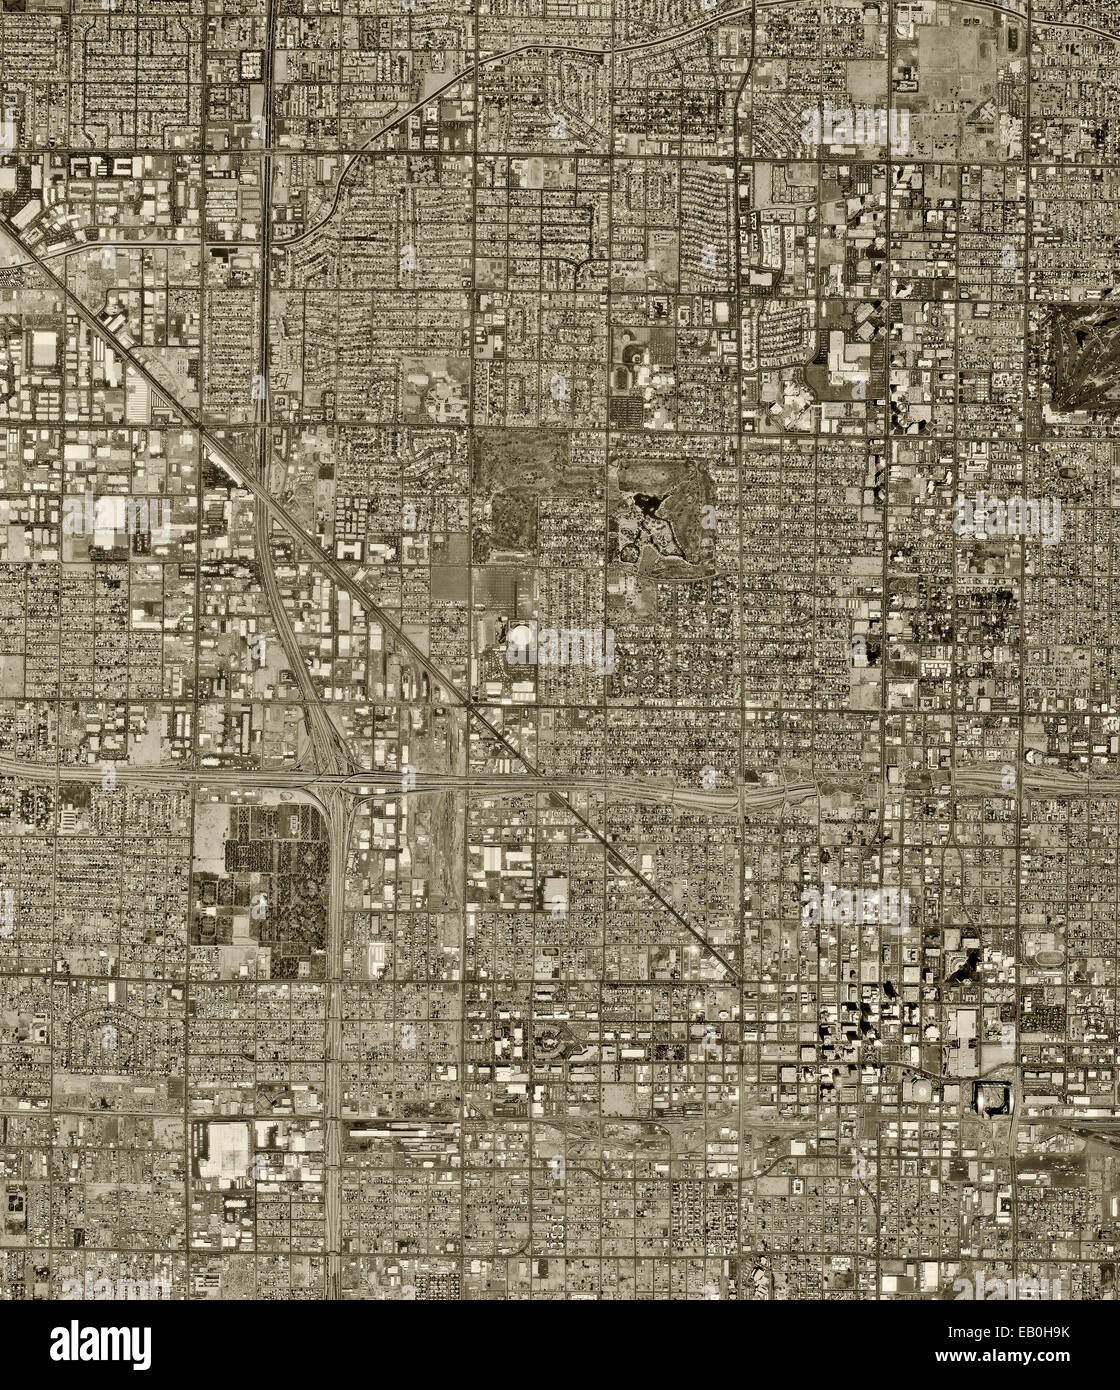 Storico di fotografia aerea di Phoenix, Arizona, 1997 Foto Stock